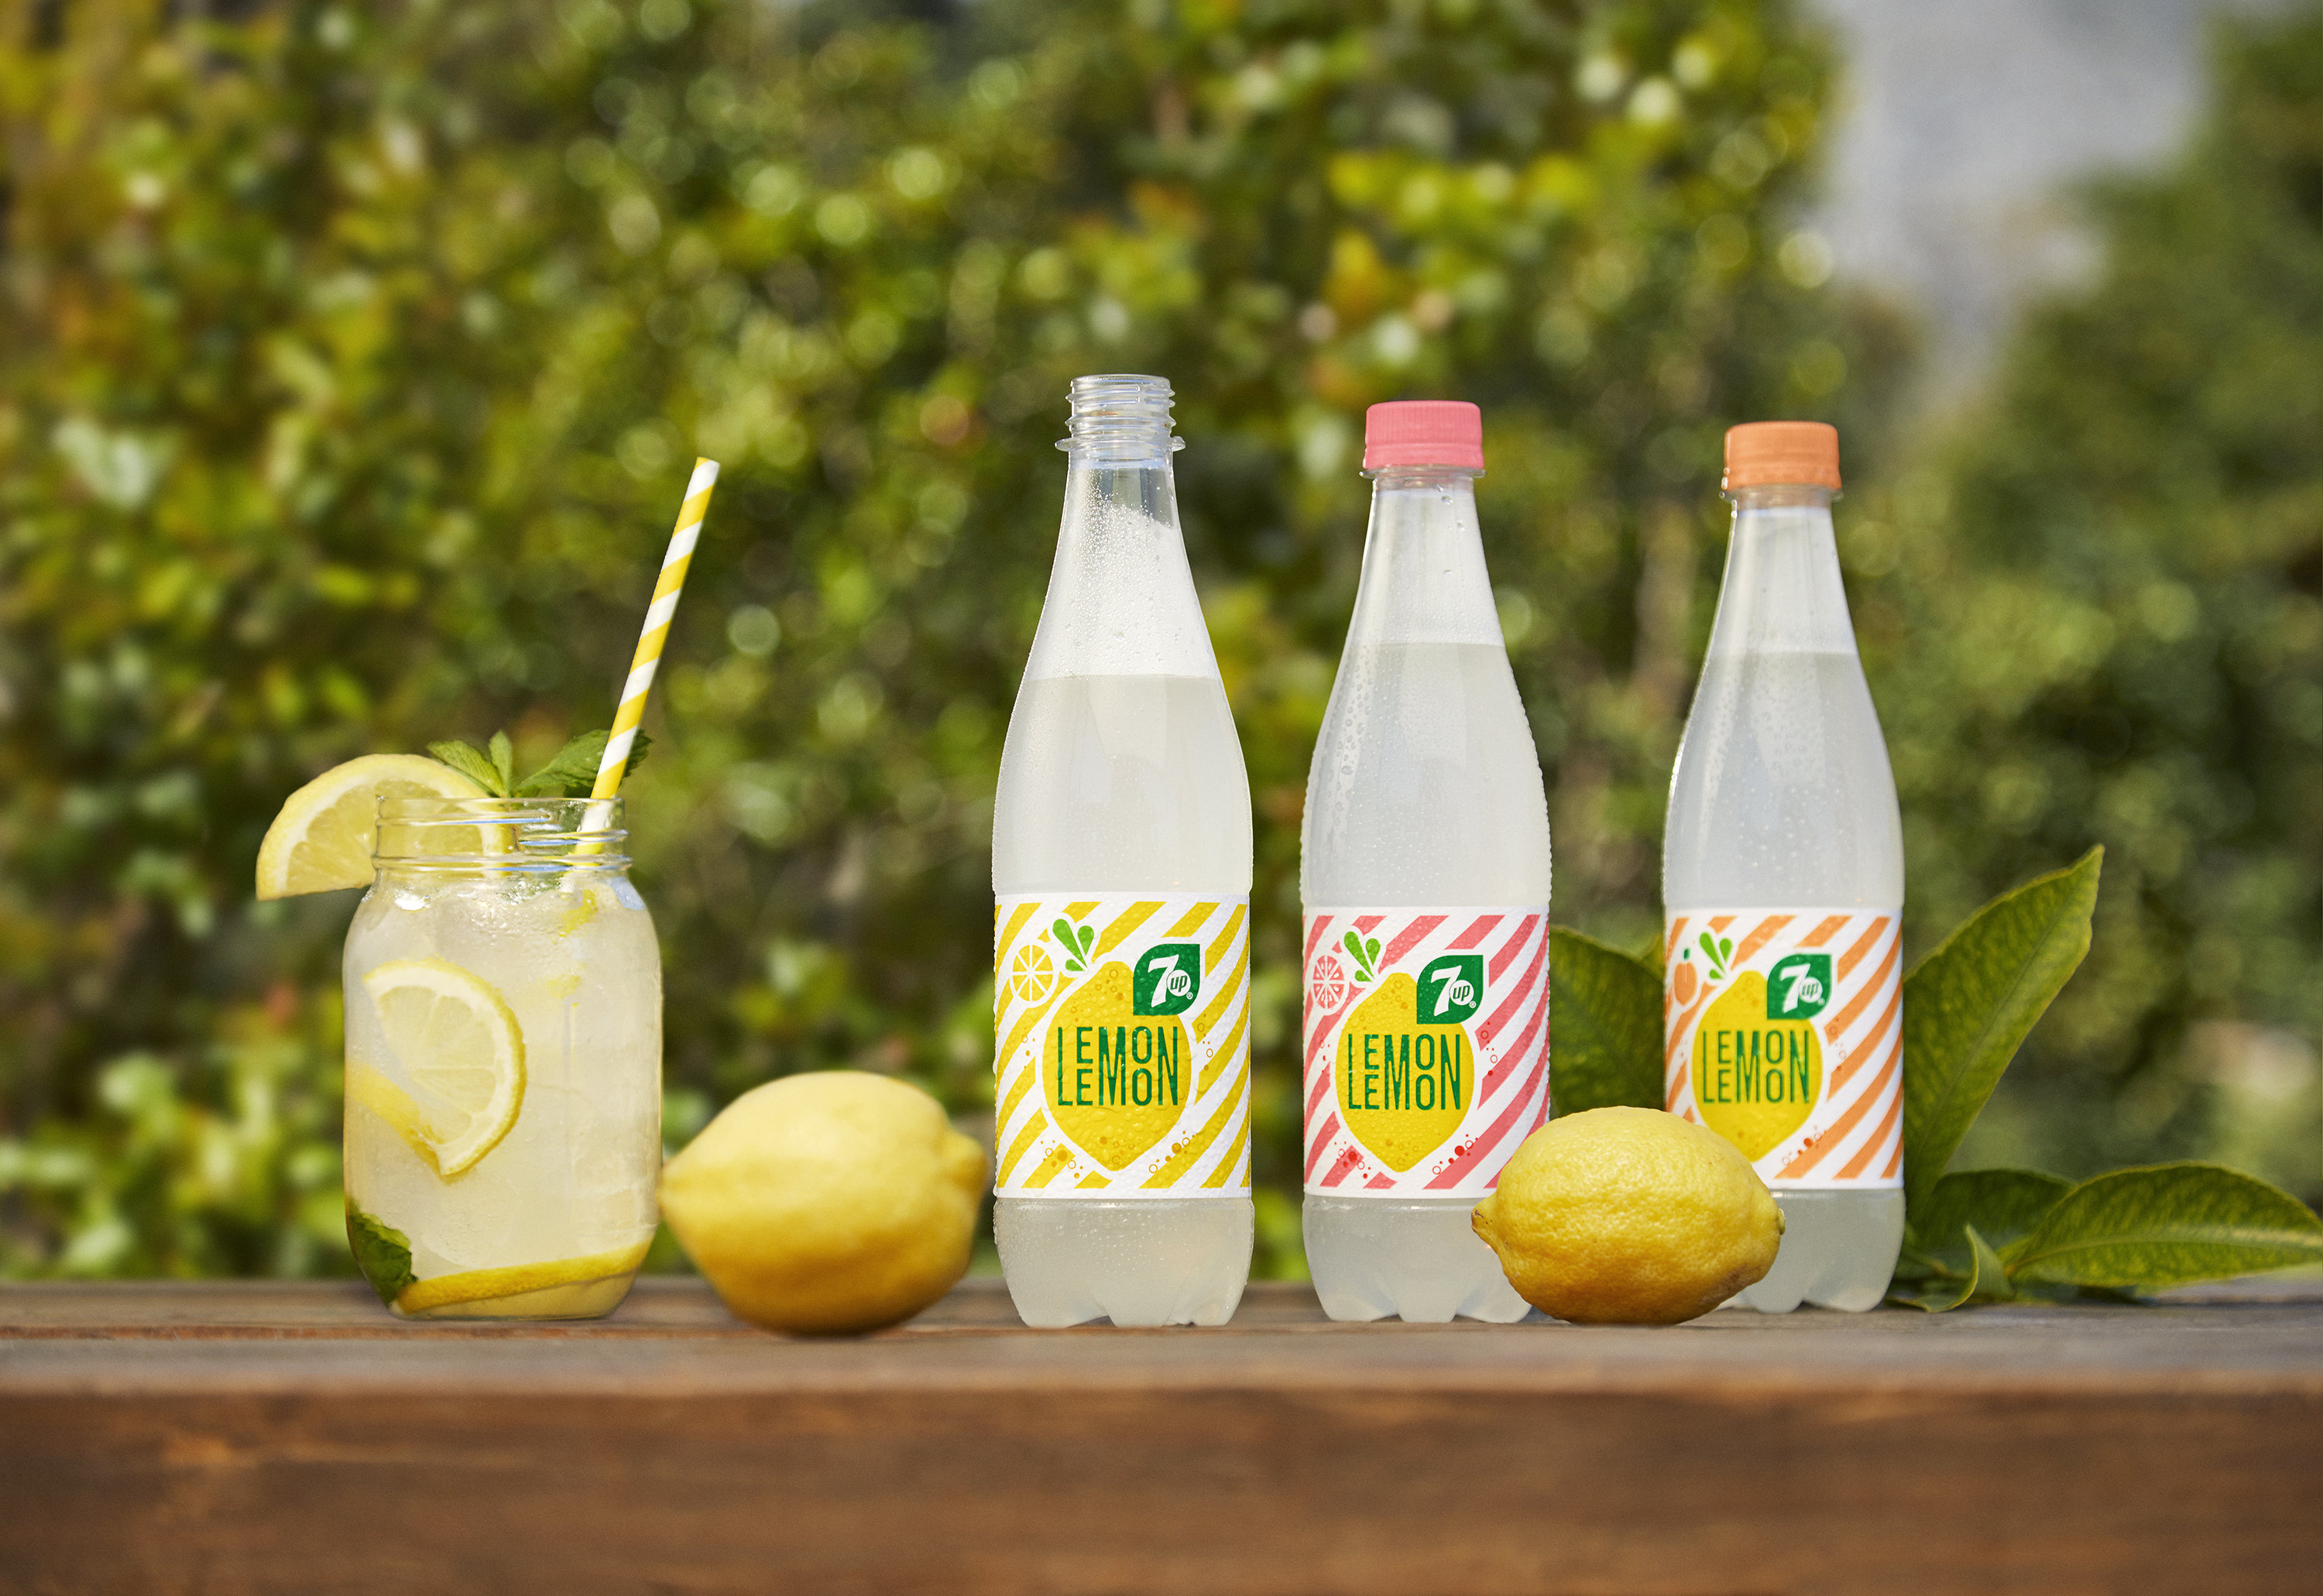 Напитки со вкусом лимона. 7up Lemon Lemon. Лимонный Севен ап. Севен ап лимон лимон. Газировка Лемон Лемон Севен ап.